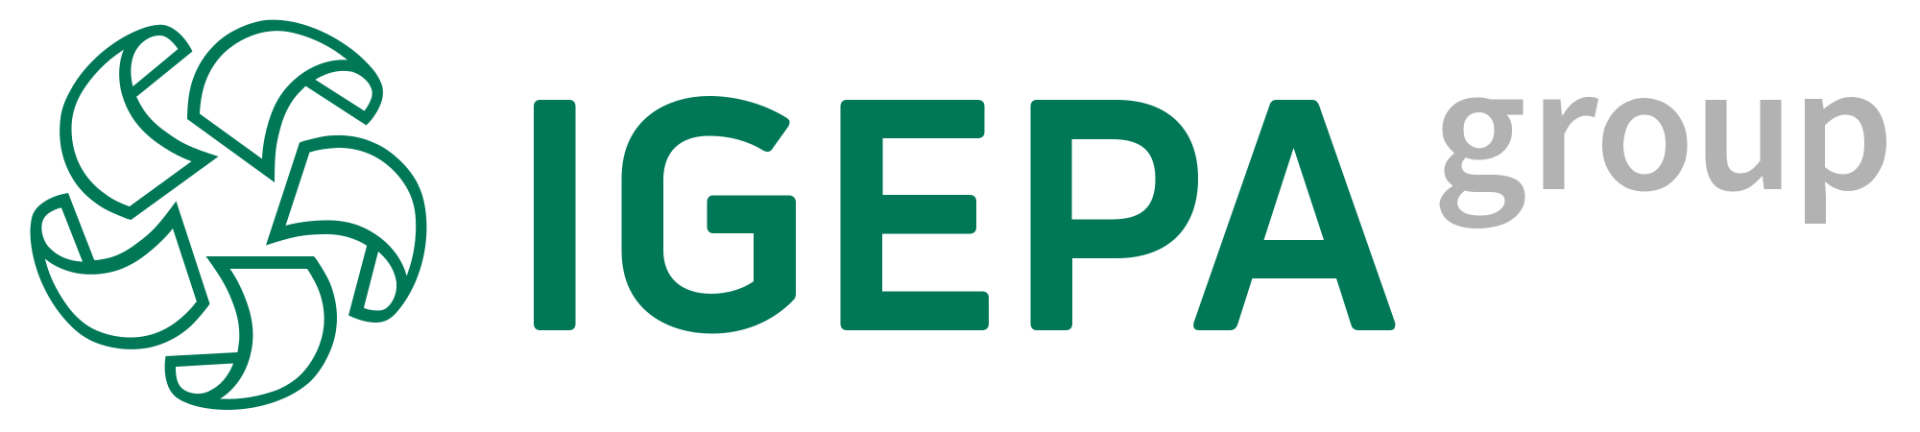 igepa logo transparent